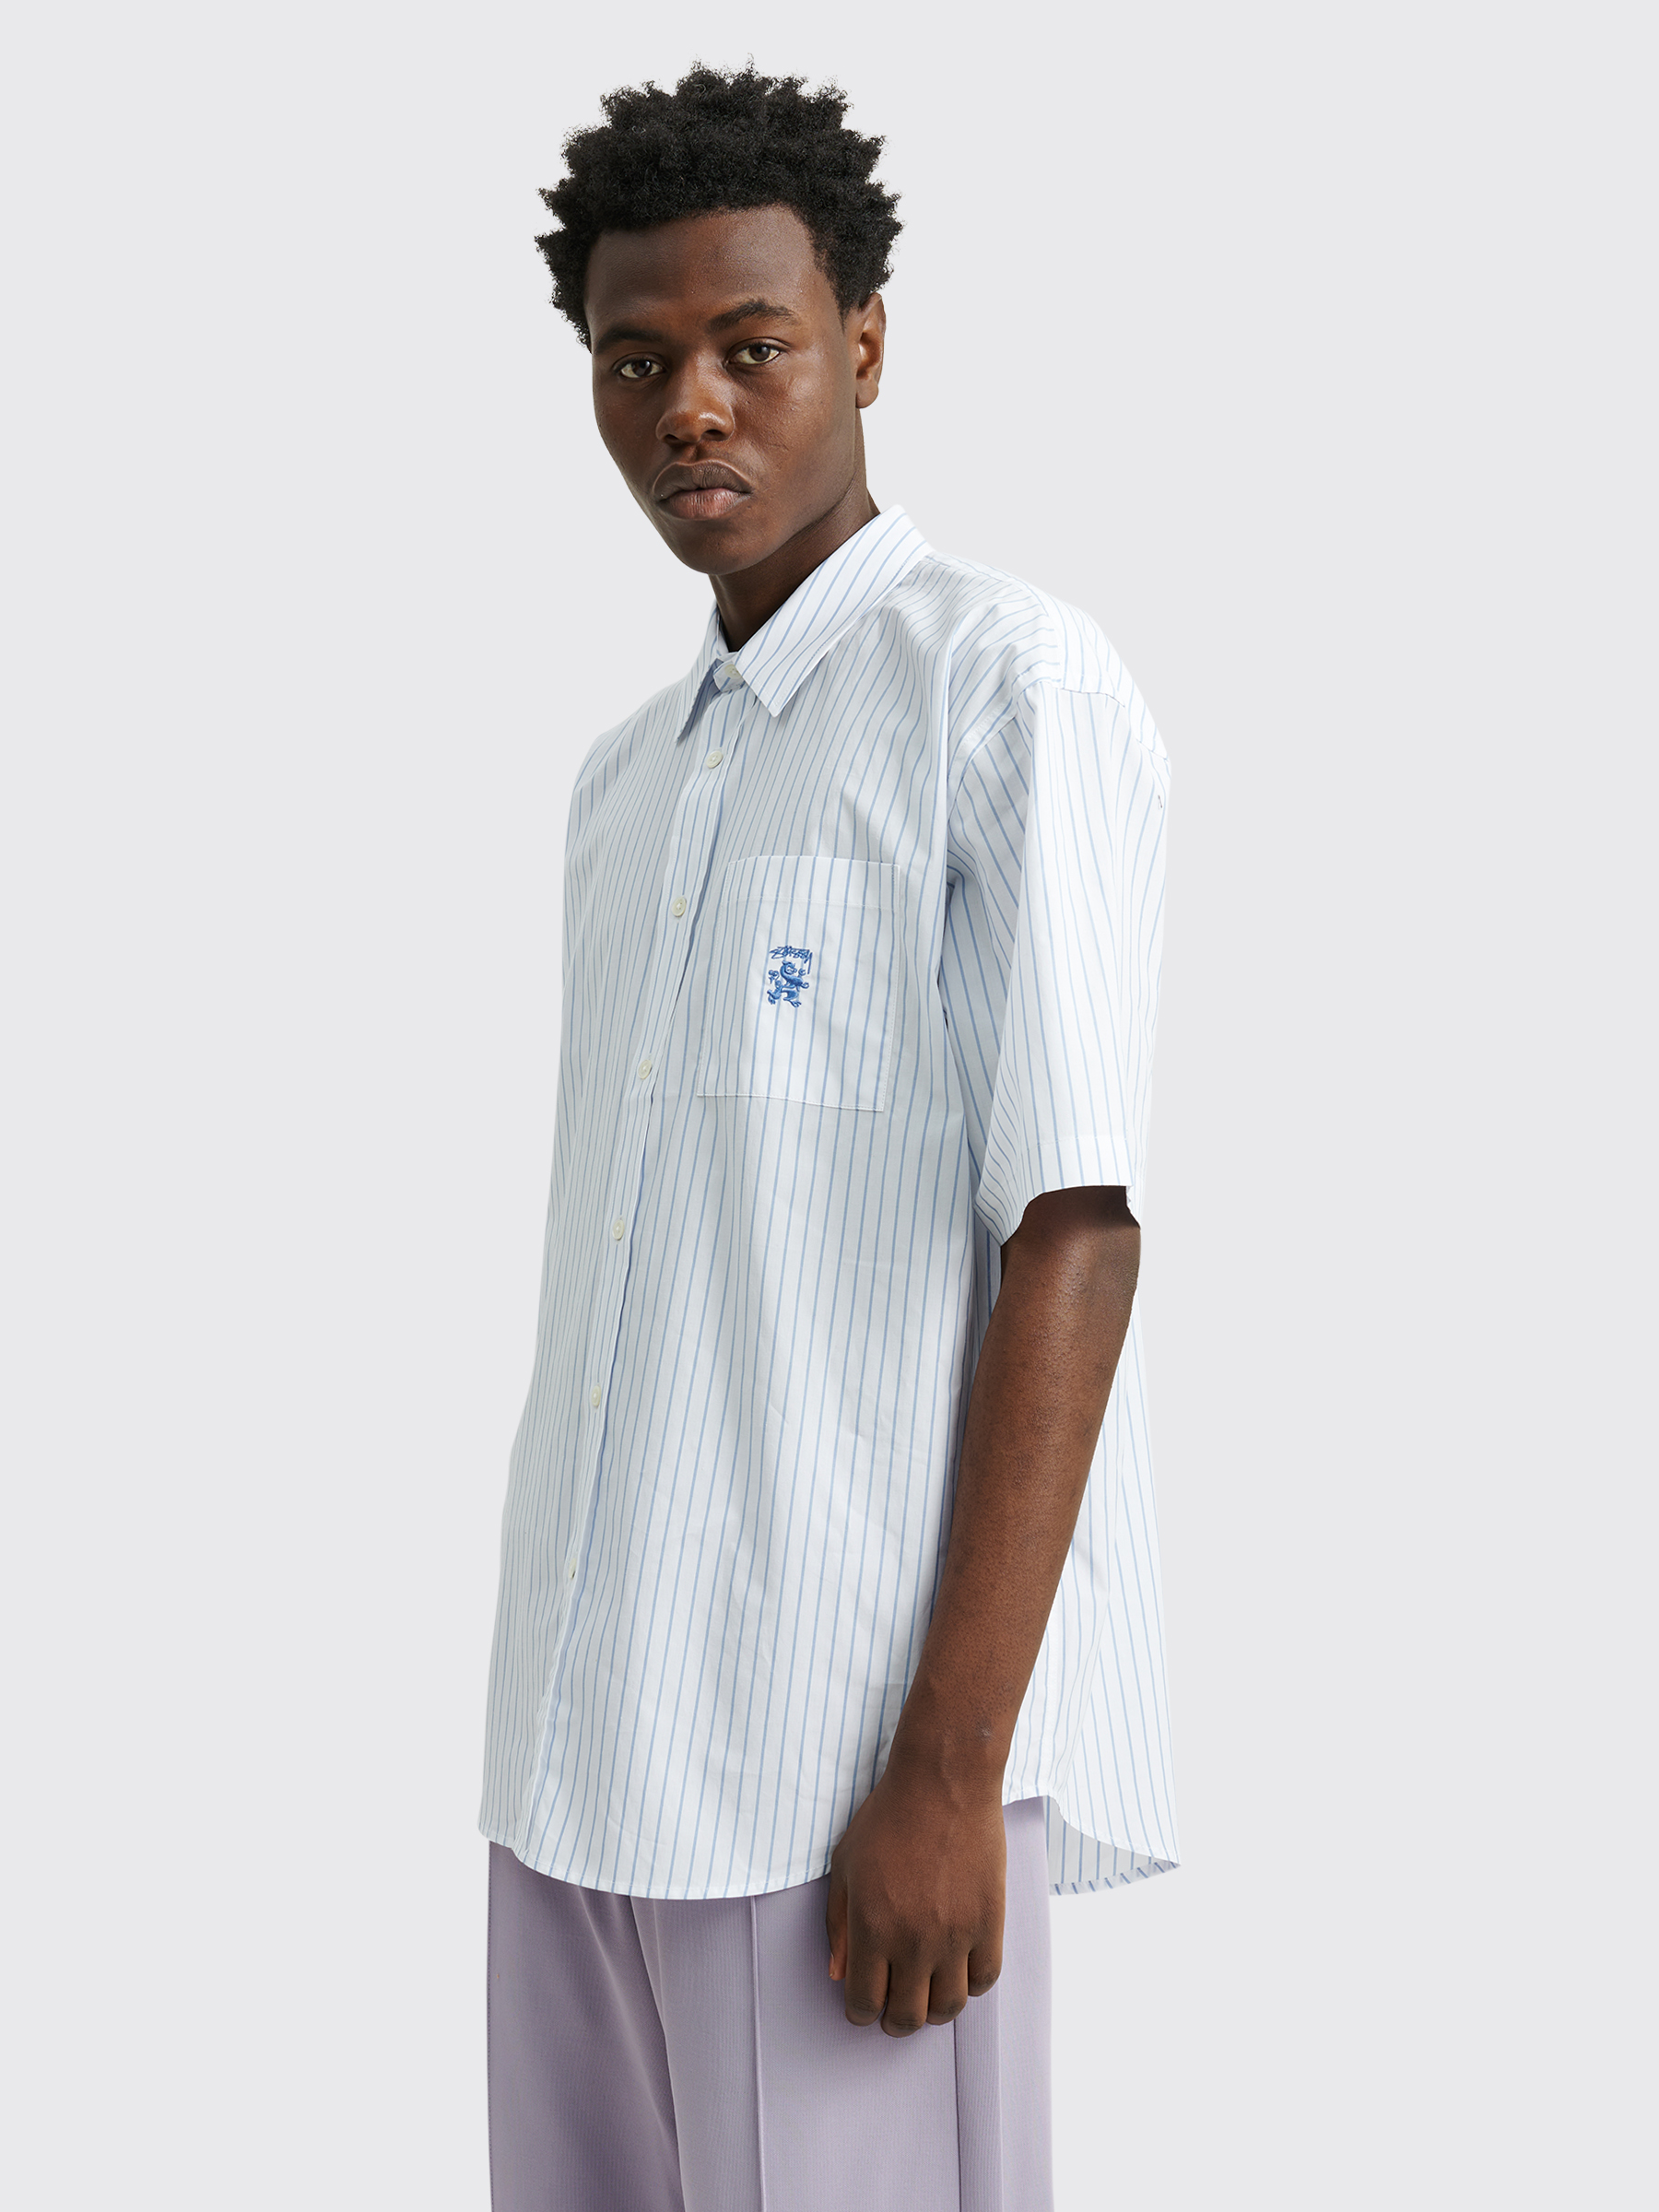 Très Bien - Stüssy Boxy Striped Shirt White / Blue